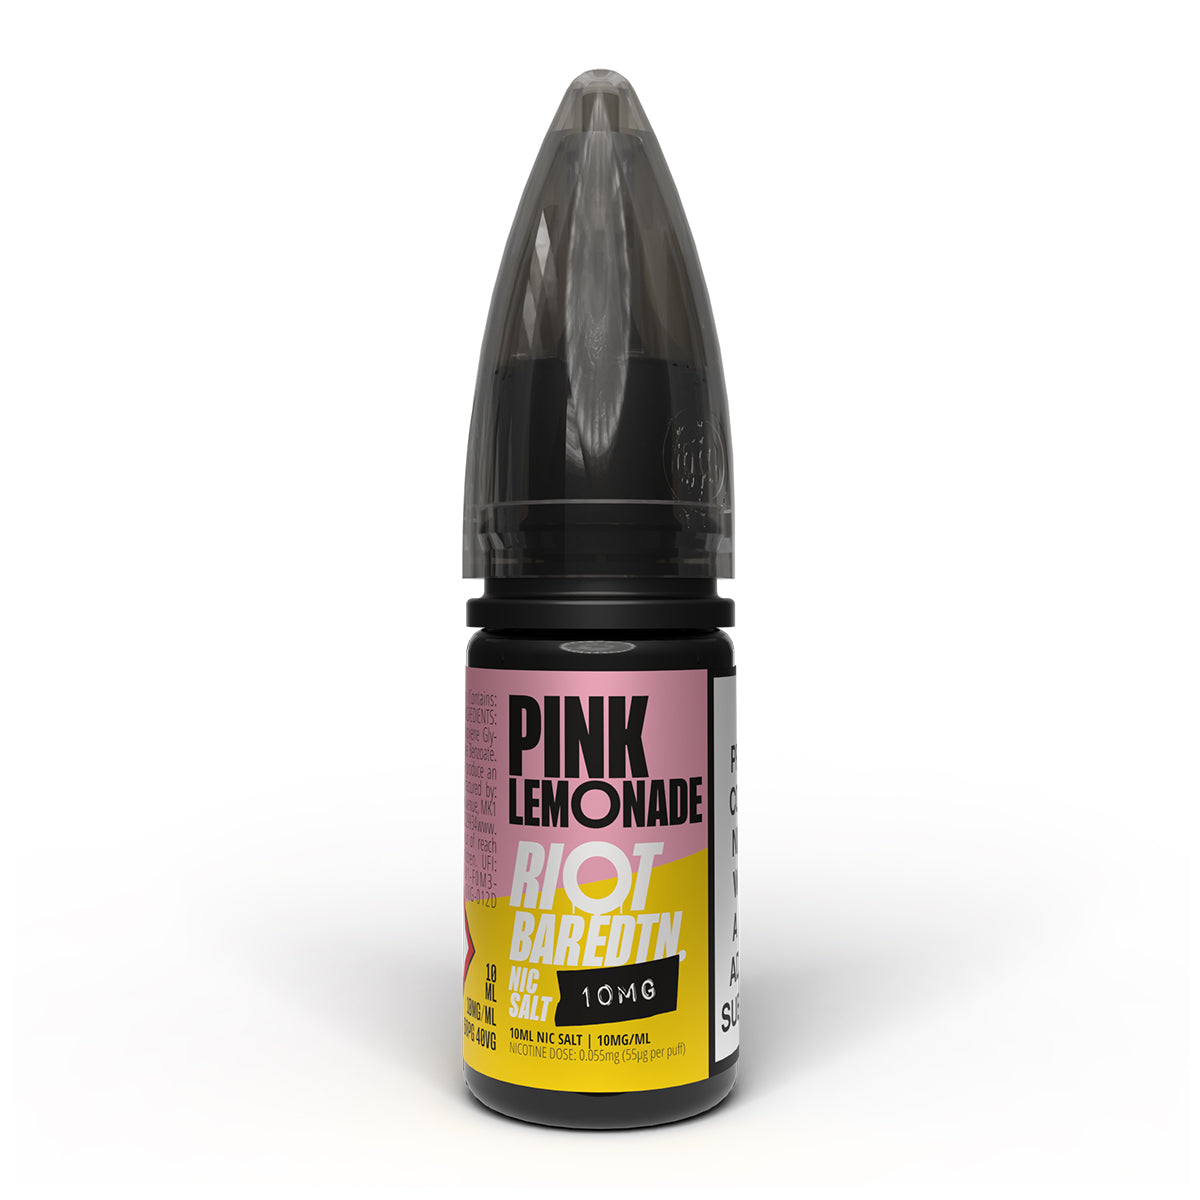 Pink Lemonade 10ml Nicotine Salt 10mg by Riot Bar Edtn